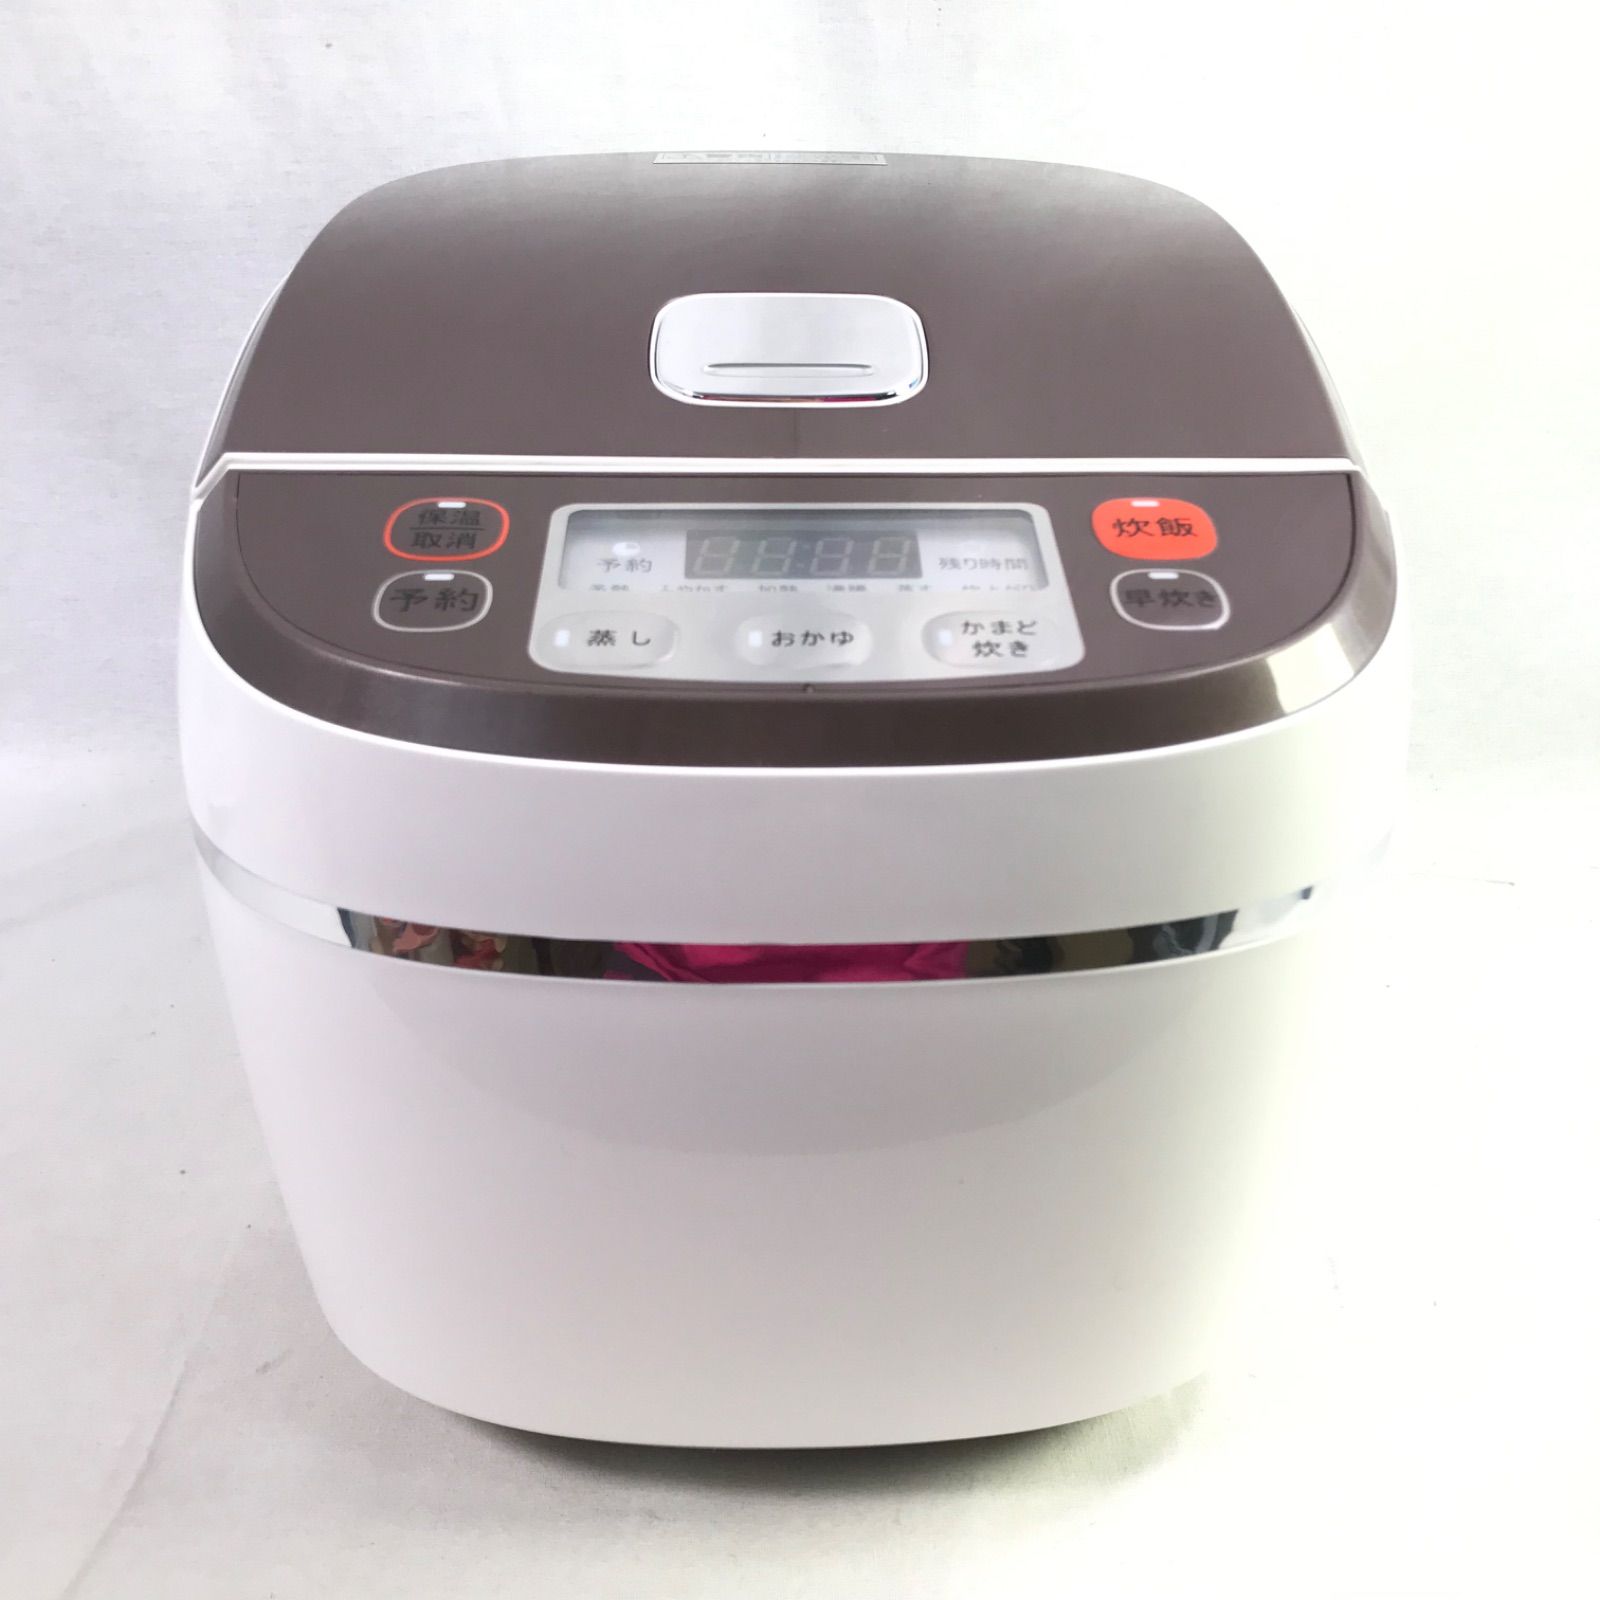 【未使用】高級土鍋加工炊飯器 DT-SH1410-3 オプション付 2合〜6合炊き 大栄トレーディング